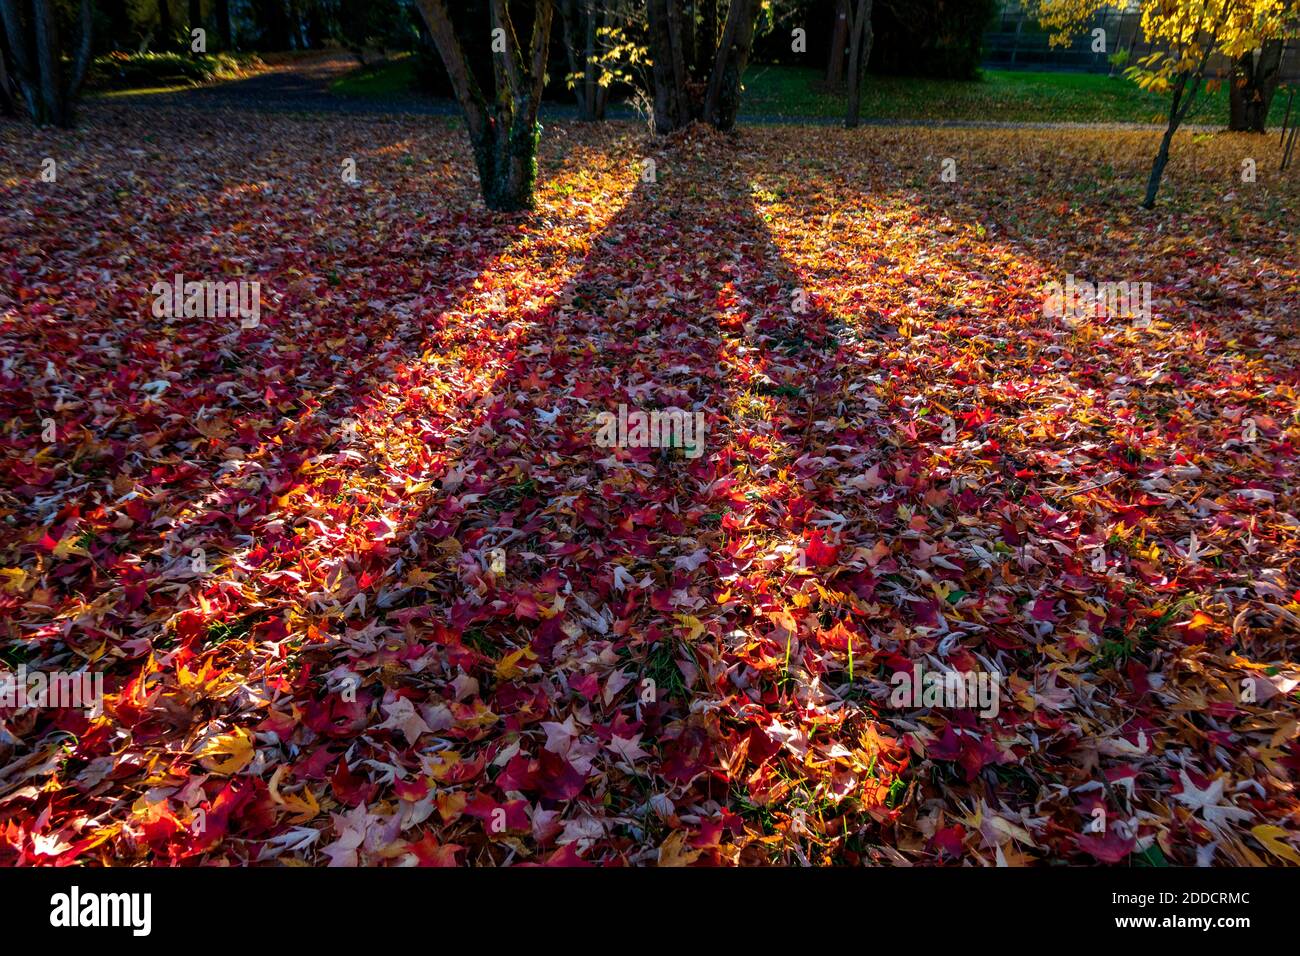 Autumn leaves on ground at sunset Stock Photo